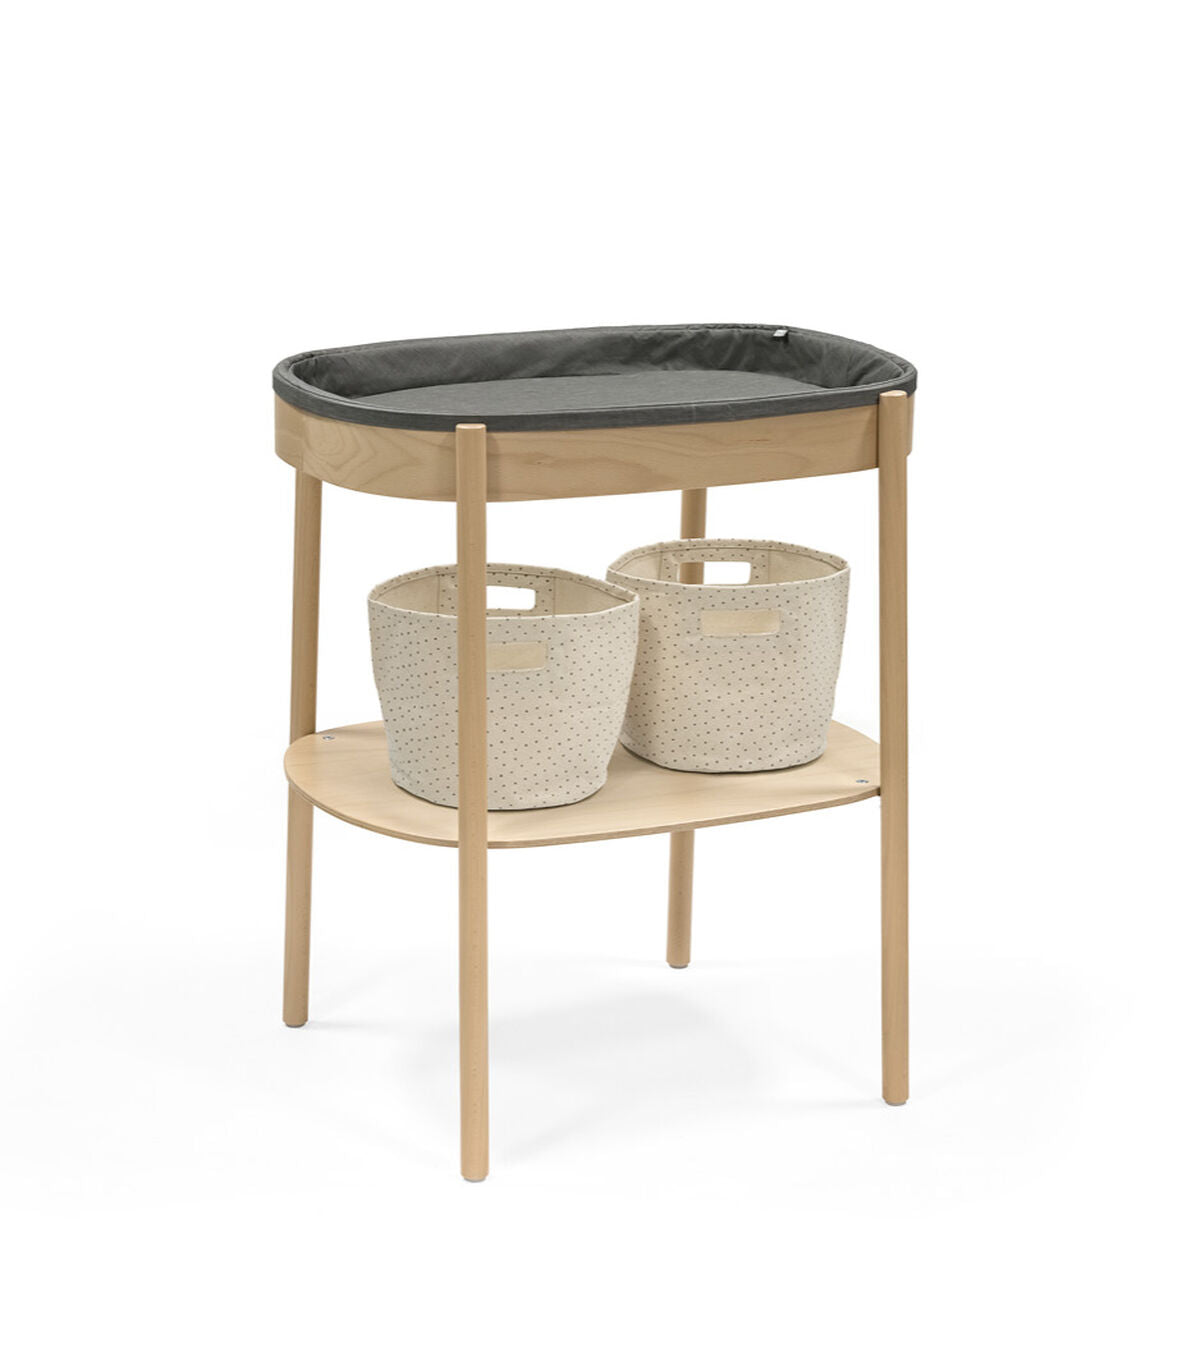 Stokke® Sleepi™ Changing Table Shelf Basket